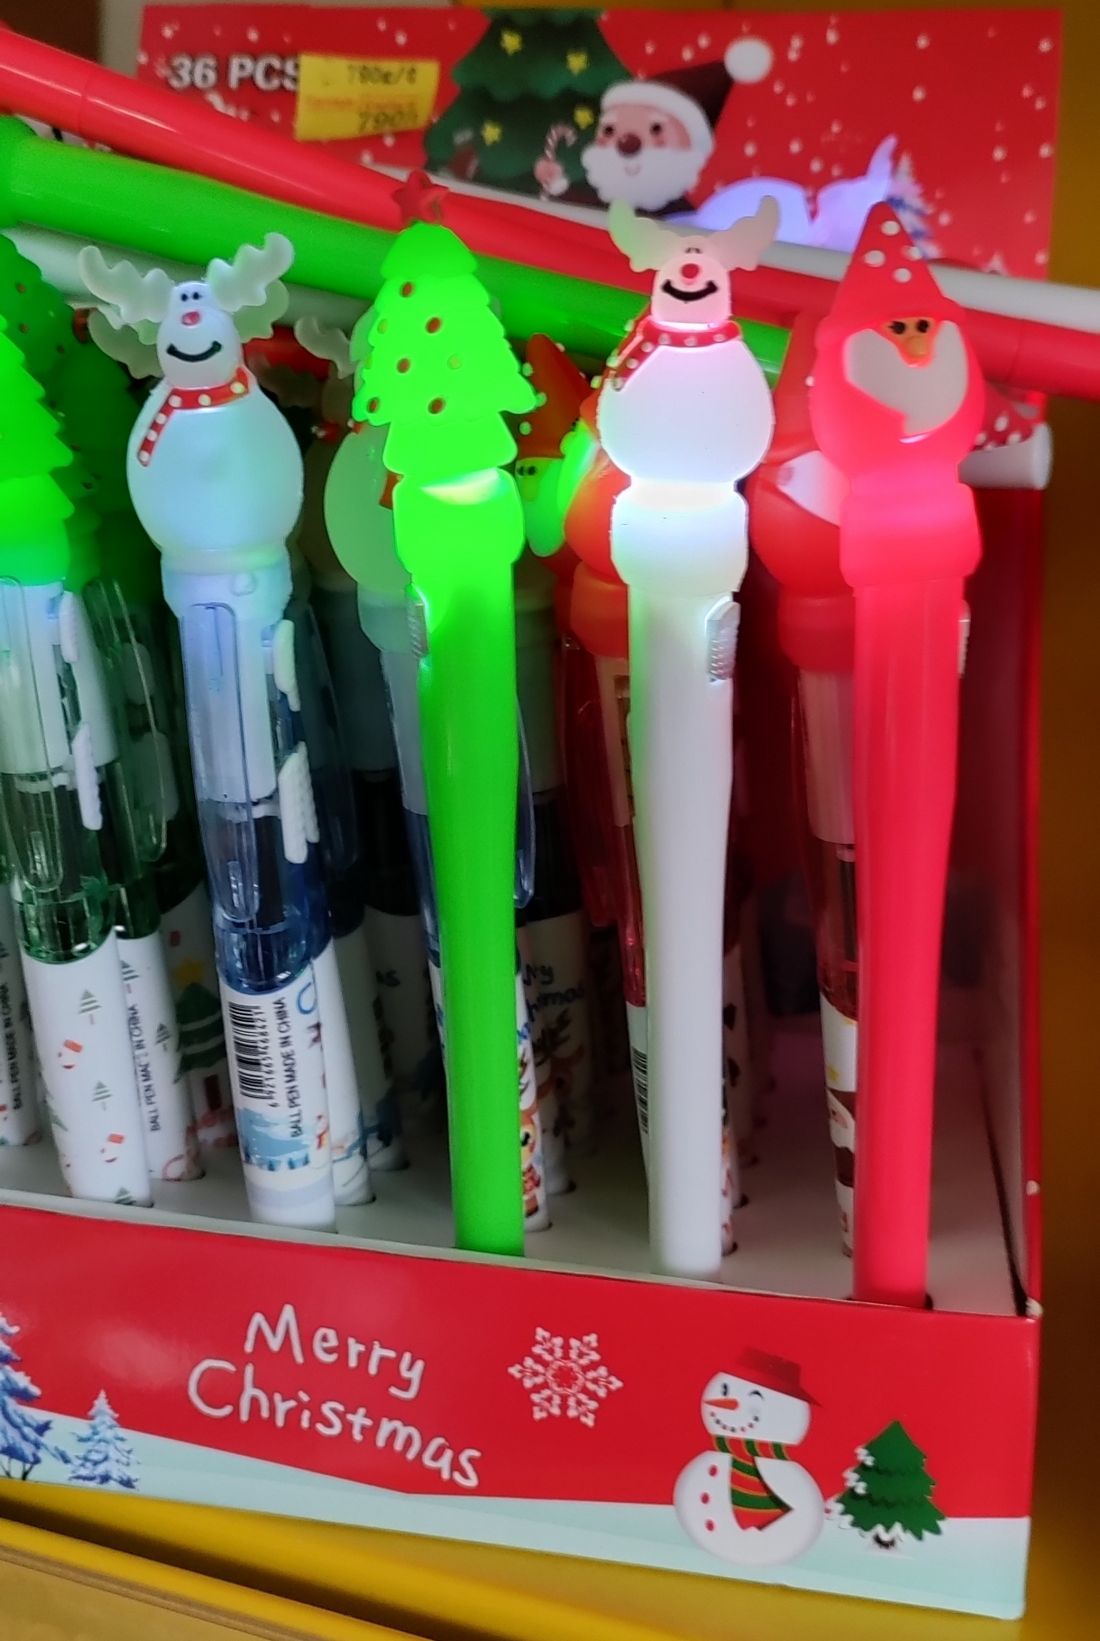 Világító tollak karácsonyi mintával, többféle